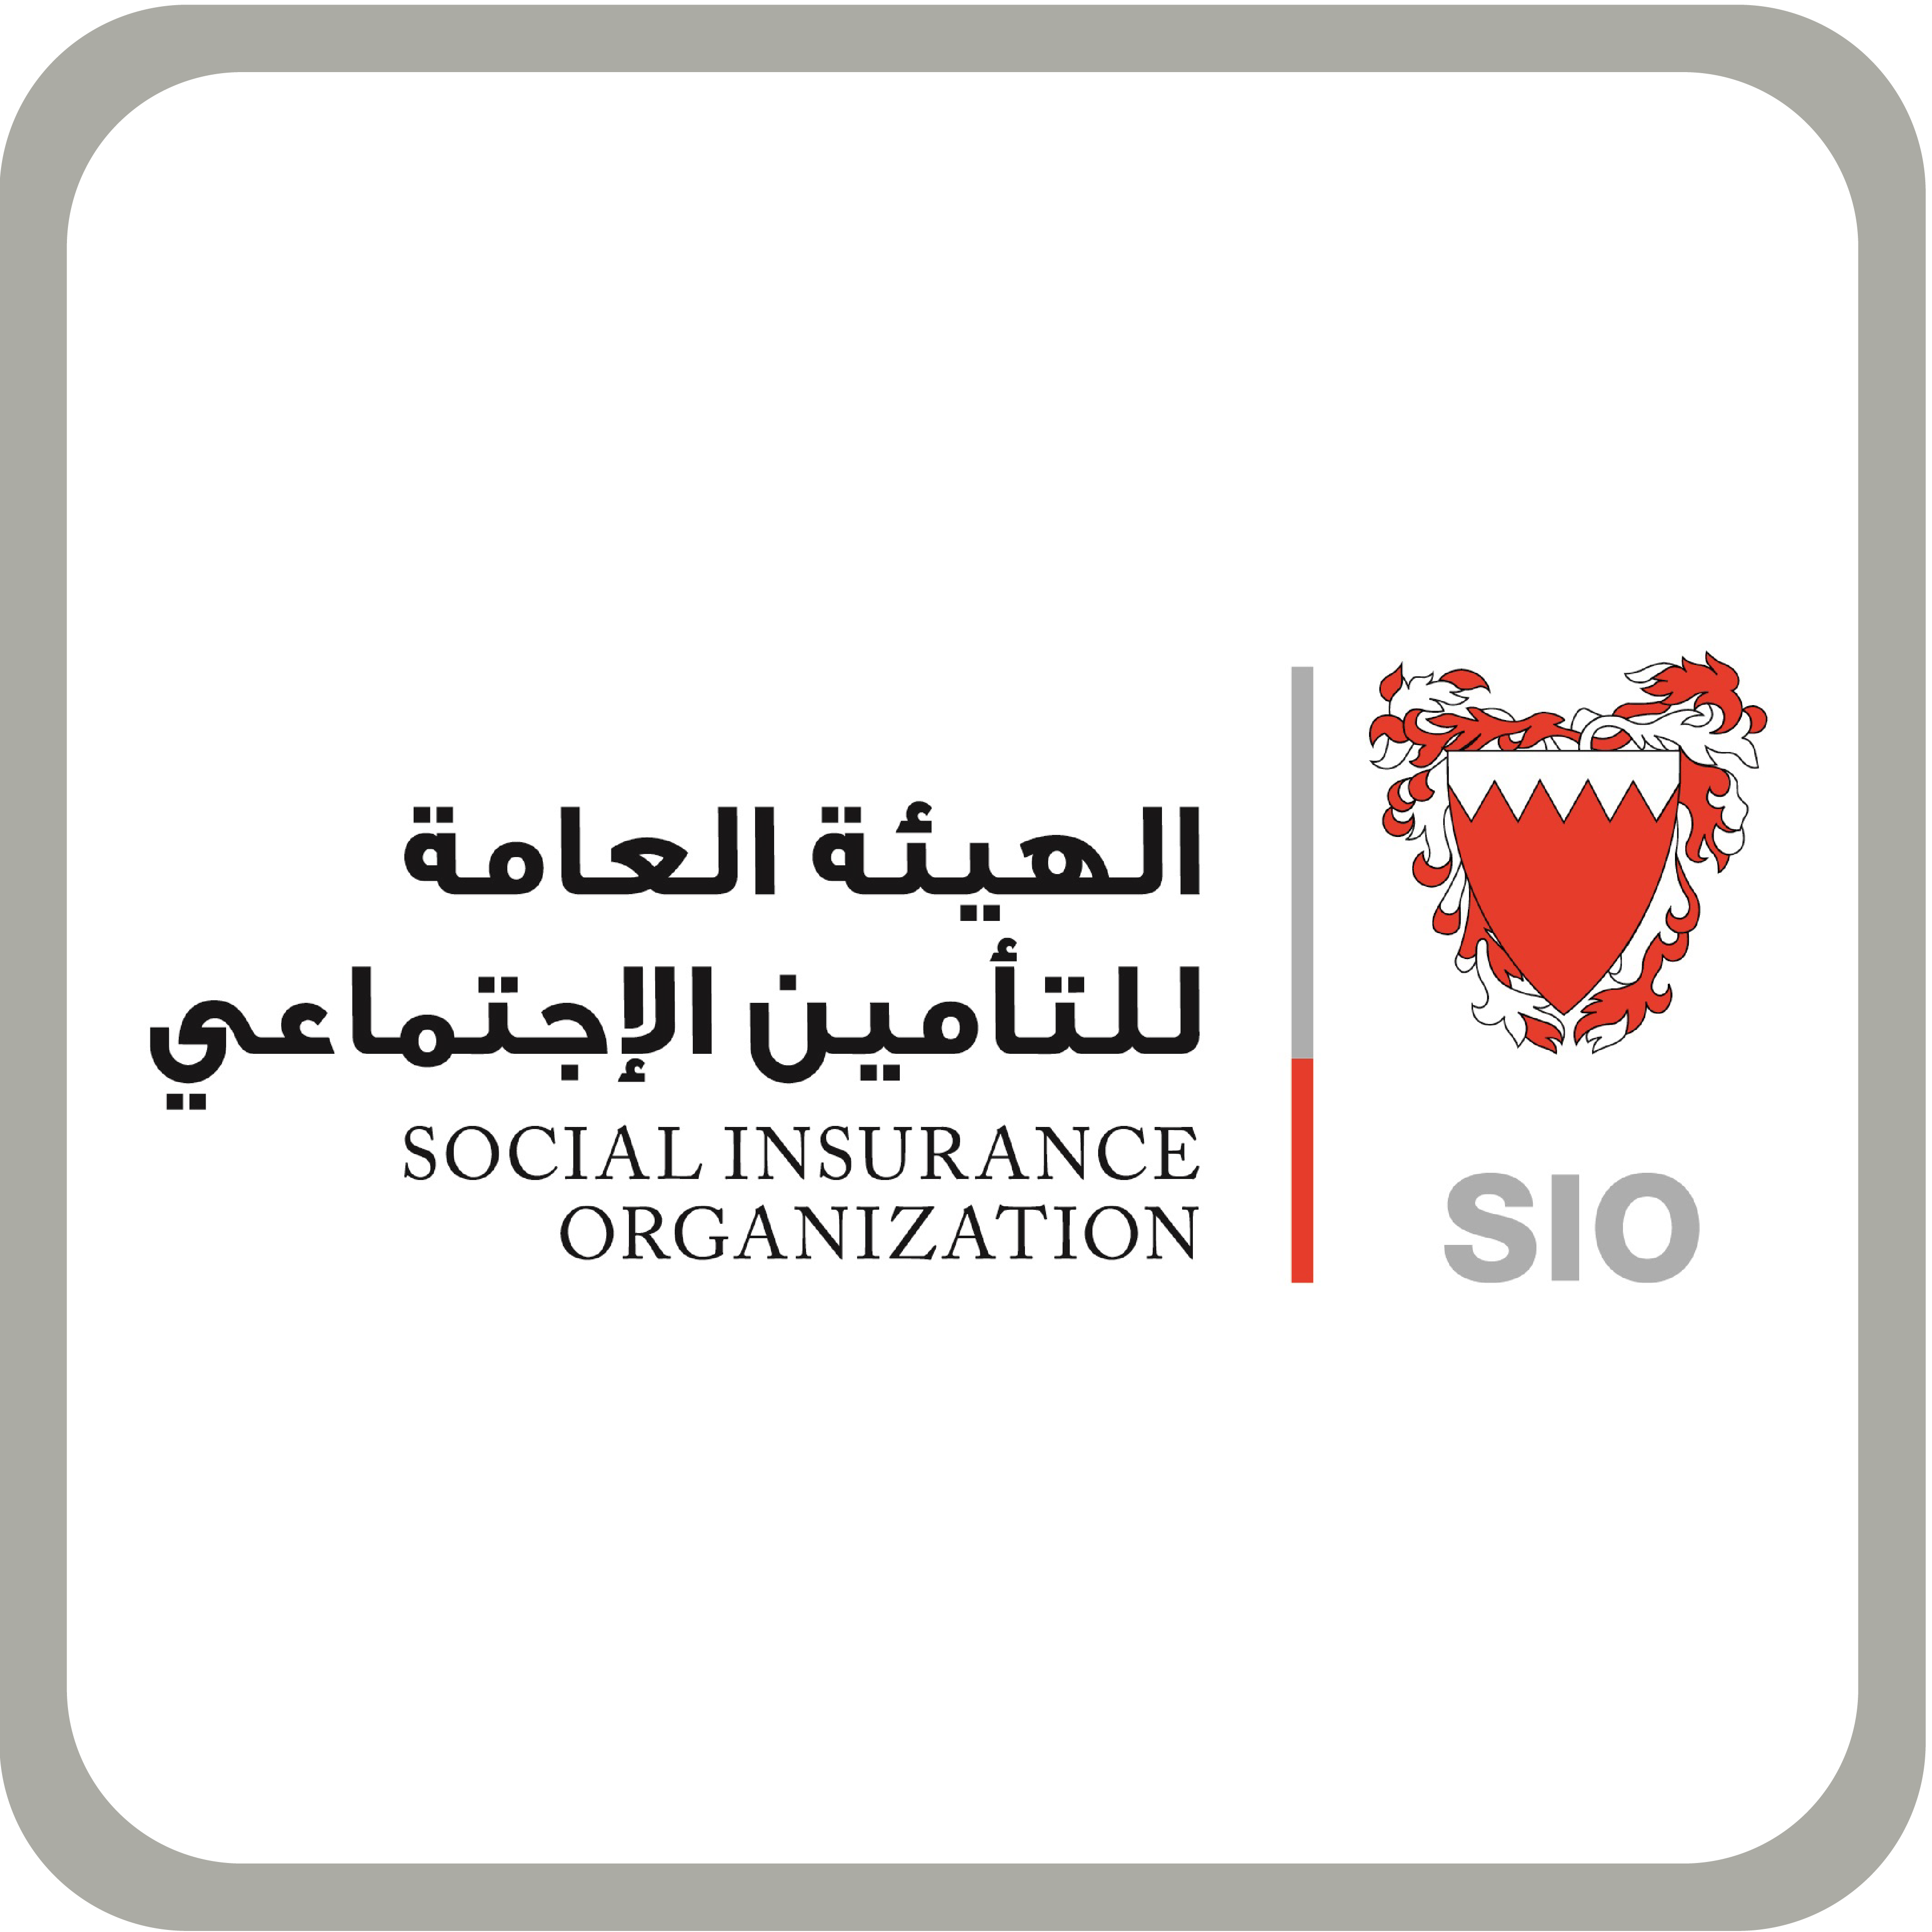 Social Insurance Organization